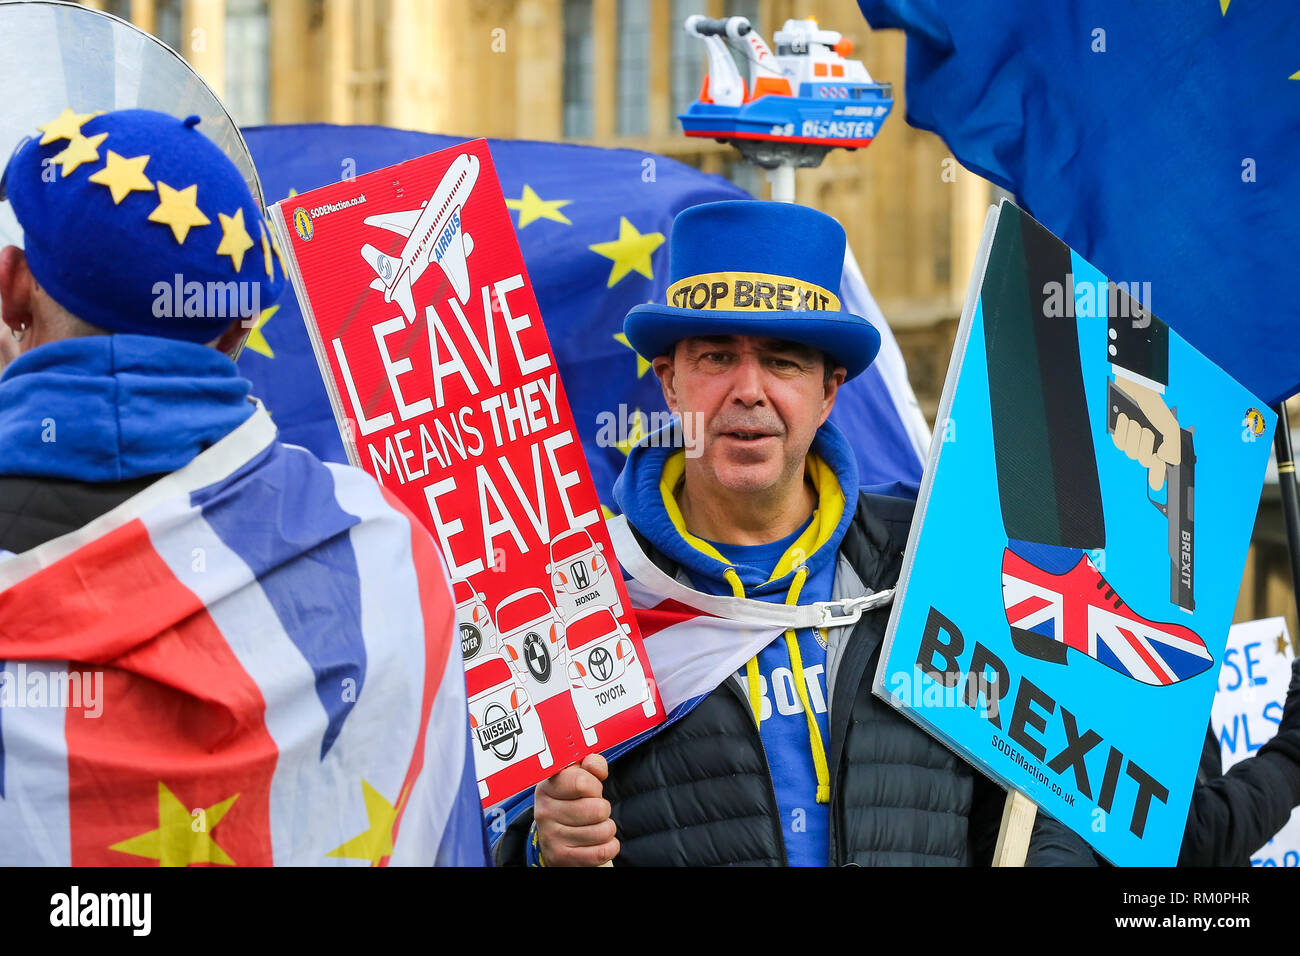 Steven Bray Gründer von sodem (Stand der Missachtung der Europäischen Bewegung) mit Plakaten bei einer Anti-Brexit Protest außerhalb der Downing Street in London gesehen. Stockfoto